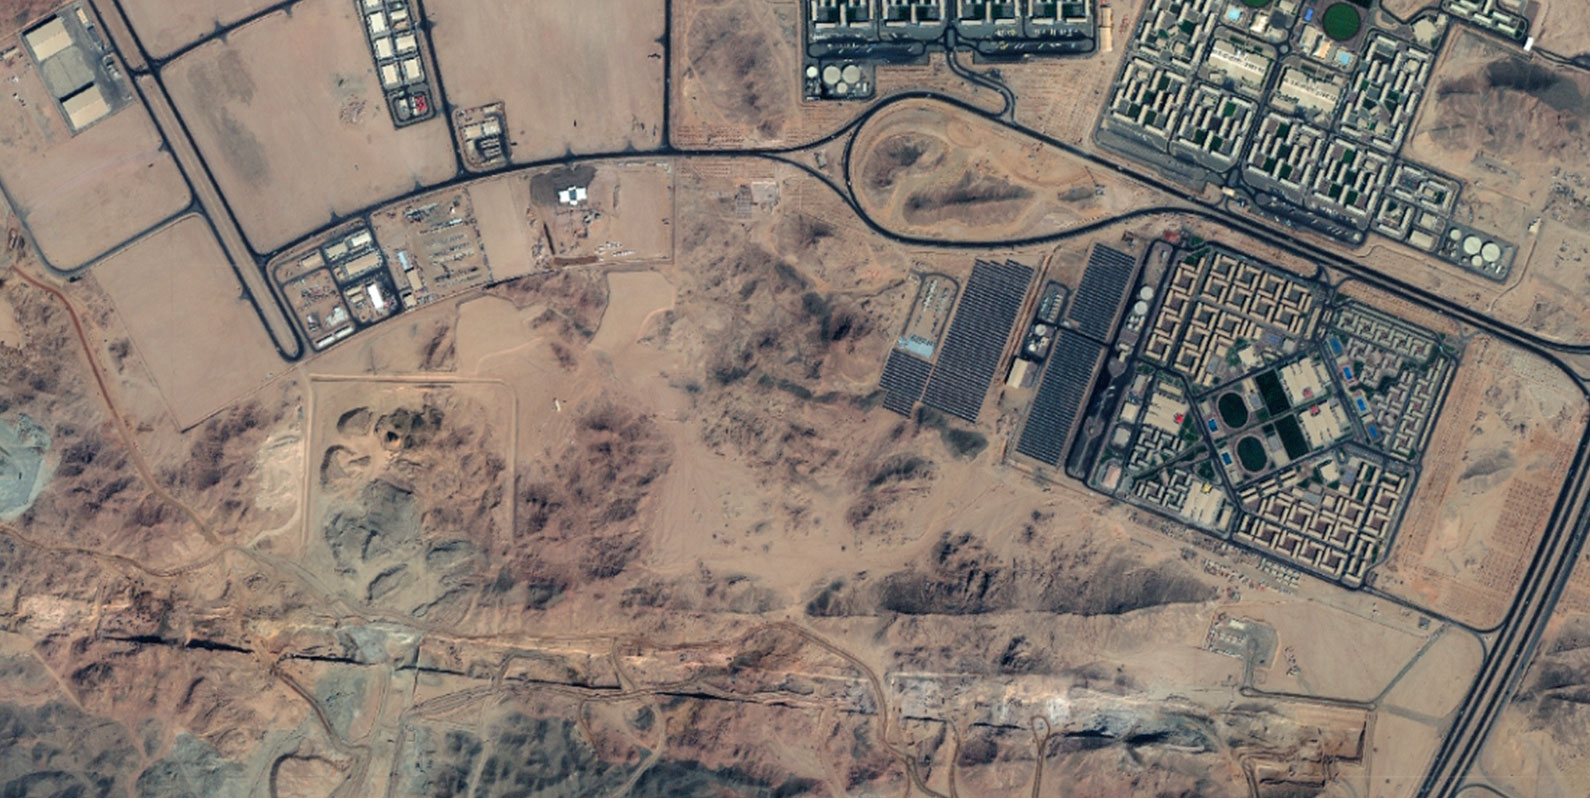 Estas exclusivas imagens de satélite mostram que a megacidade de ficção científica da Arábia Saudita está em rápido desenvolvimento